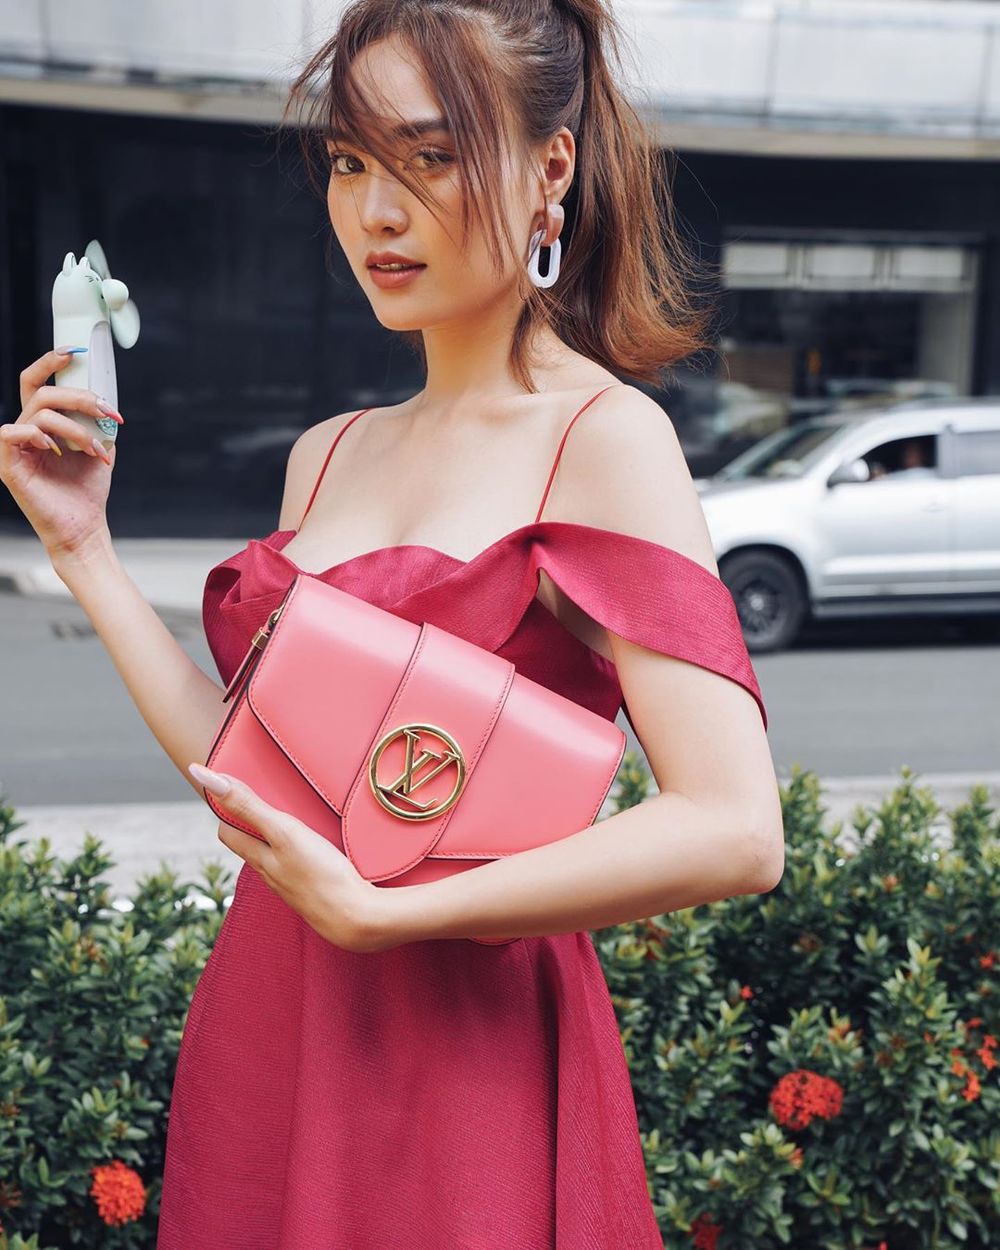  
Ninh Dương Lan Ngọc "bánh bèo" hơn hẳn với mẫu váy hồng đỏ, túi xách hiệu đi cùng tạo điểm nhấn cho outfit của diễn viên. (Ảnh: FBNV)